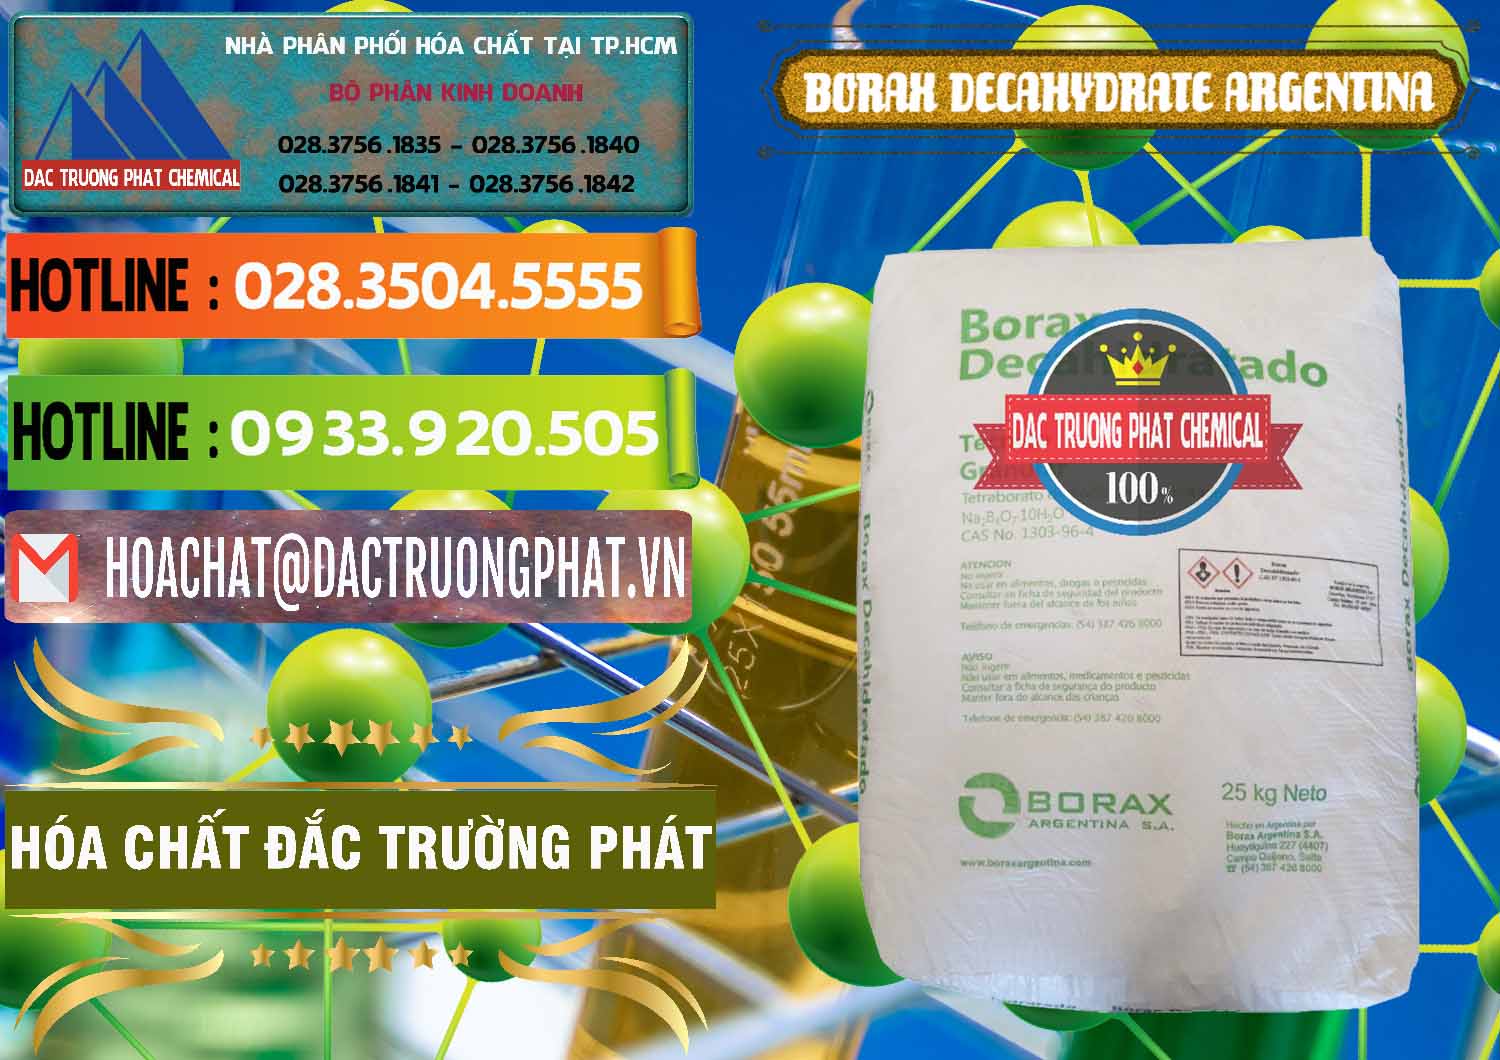 Chuyên cung cấp & bán Borax Decahydrate Argentina - 0446 - Cty chuyên phân phối ( cung ứng ) hóa chất tại TP.HCM - cungcaphoachat.com.vn